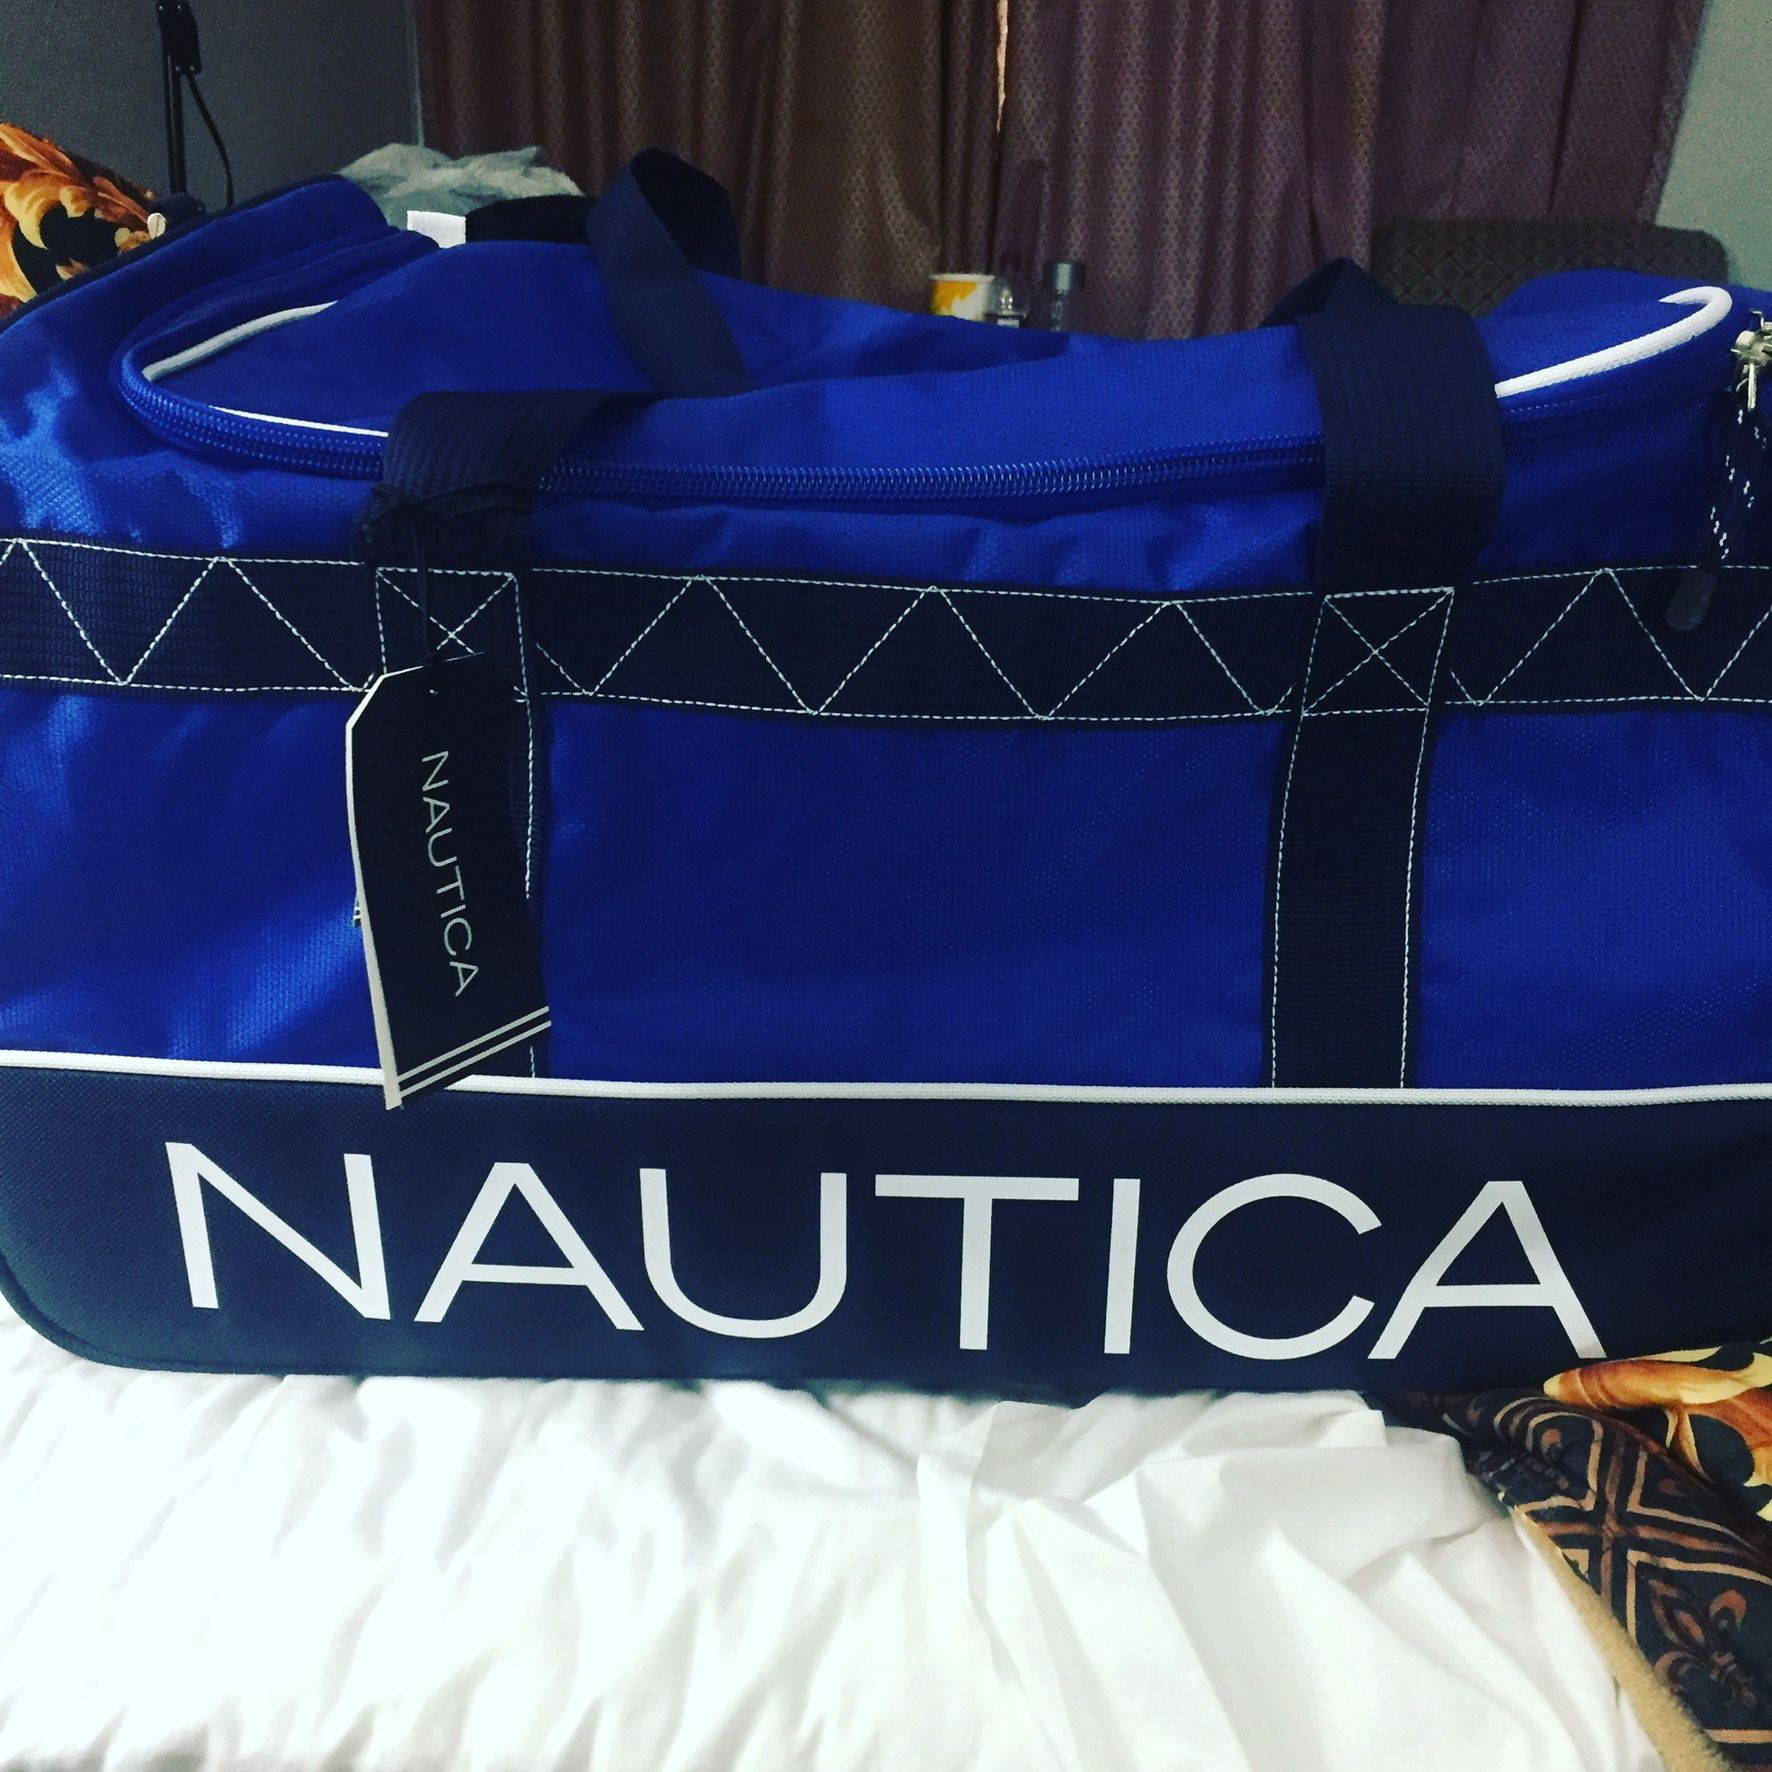 Nautica duffle bag